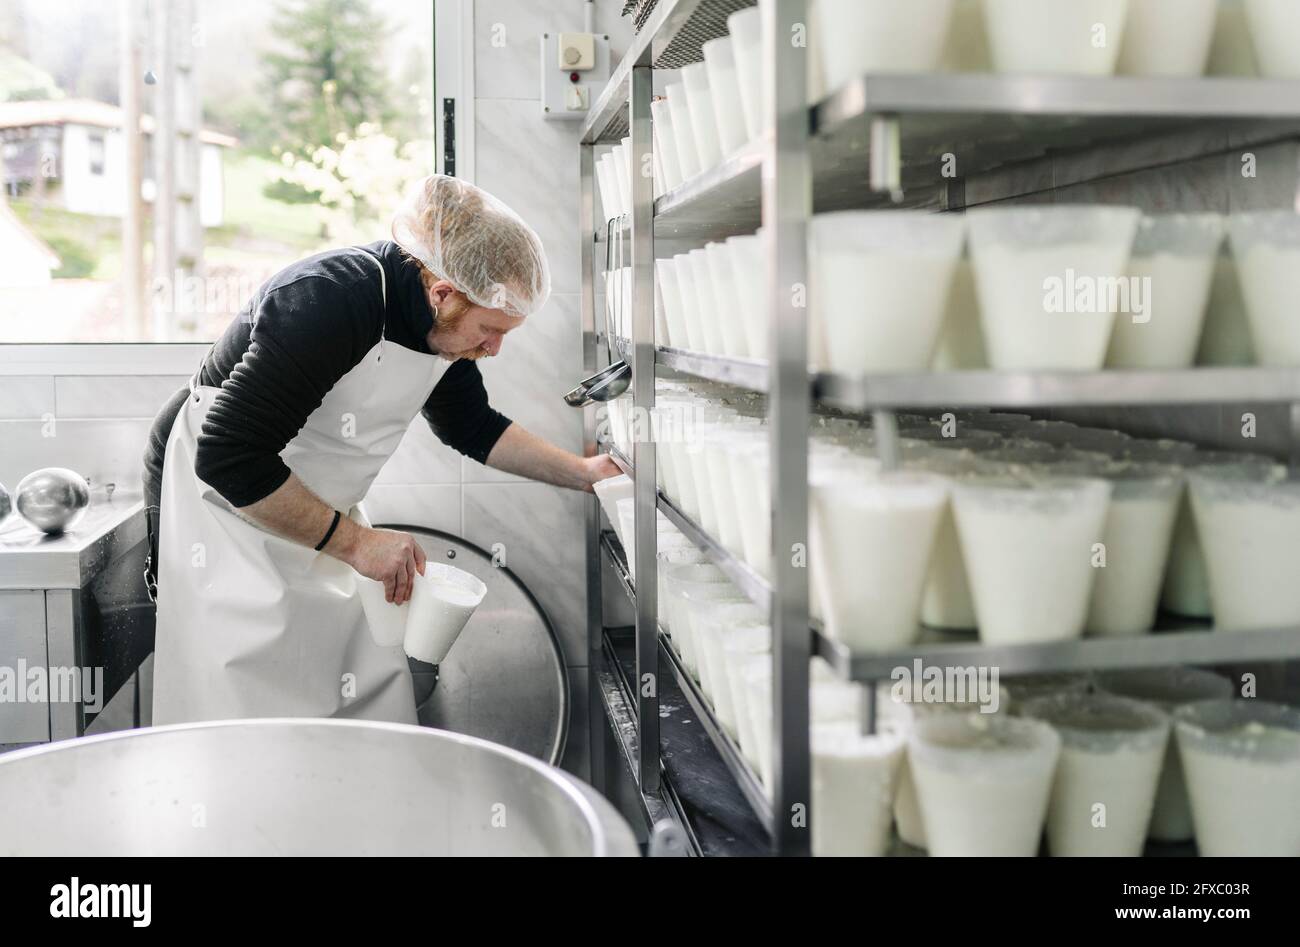 Entrepreneur de sexe masculin mature qui organise les contenants de fromage en rack dans la salle de stockage Banque D'Images